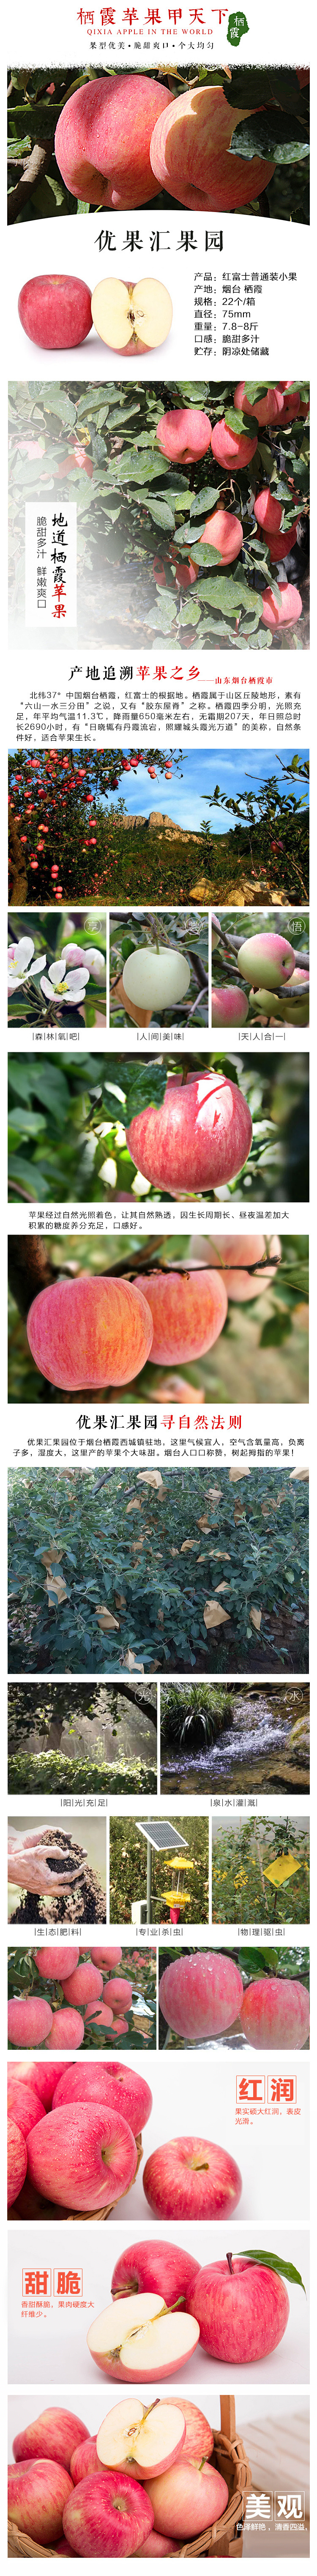 淘宝美工龙猫天猫  淘宝 健康 水果 苹果  特产   有机作品